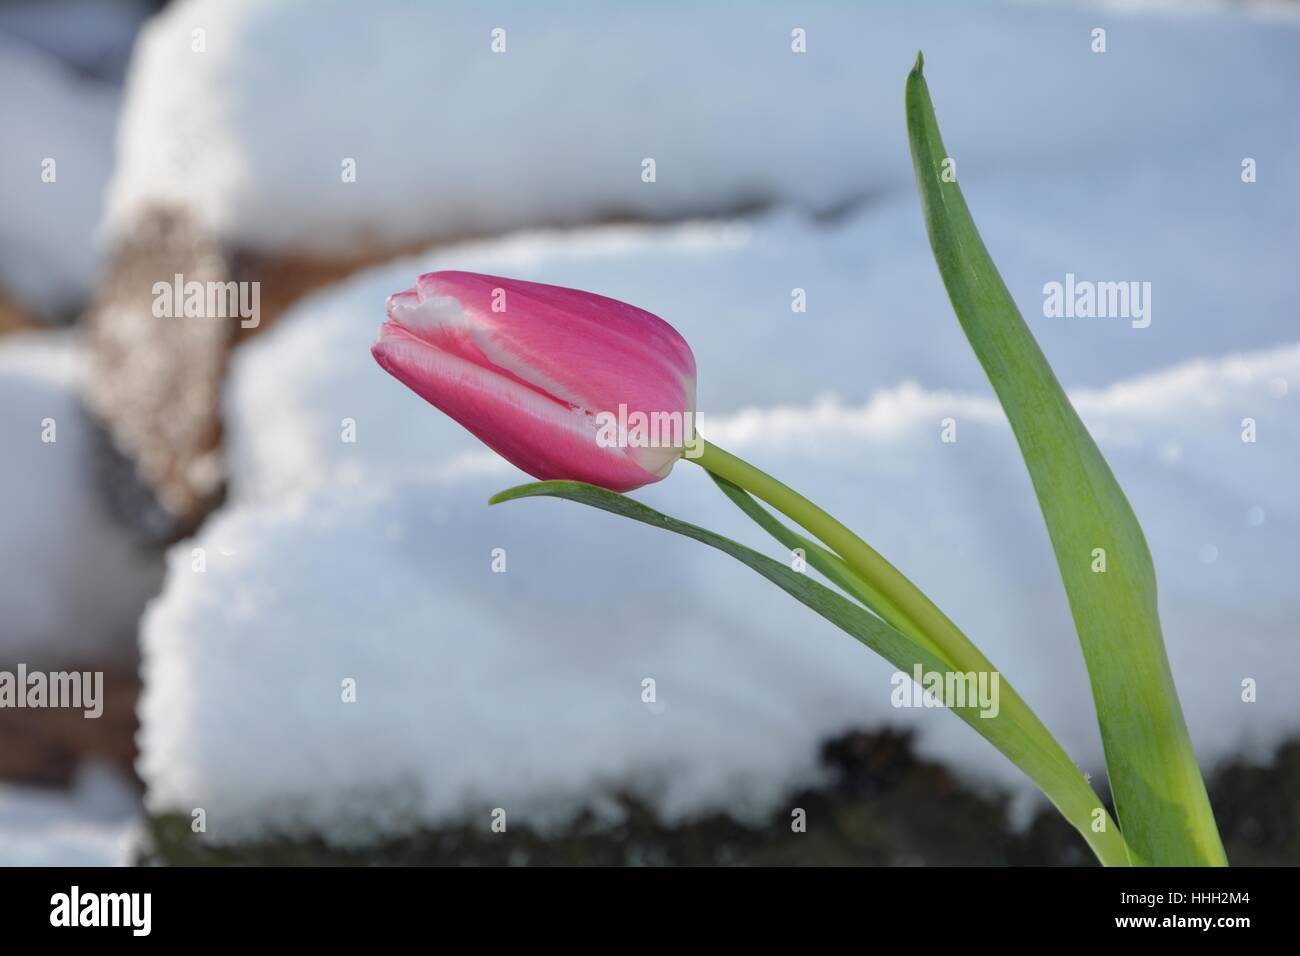 Rosa Tulpe (Tulipa) liegt auf verschneiten hölzernen Stamm Stockfoto